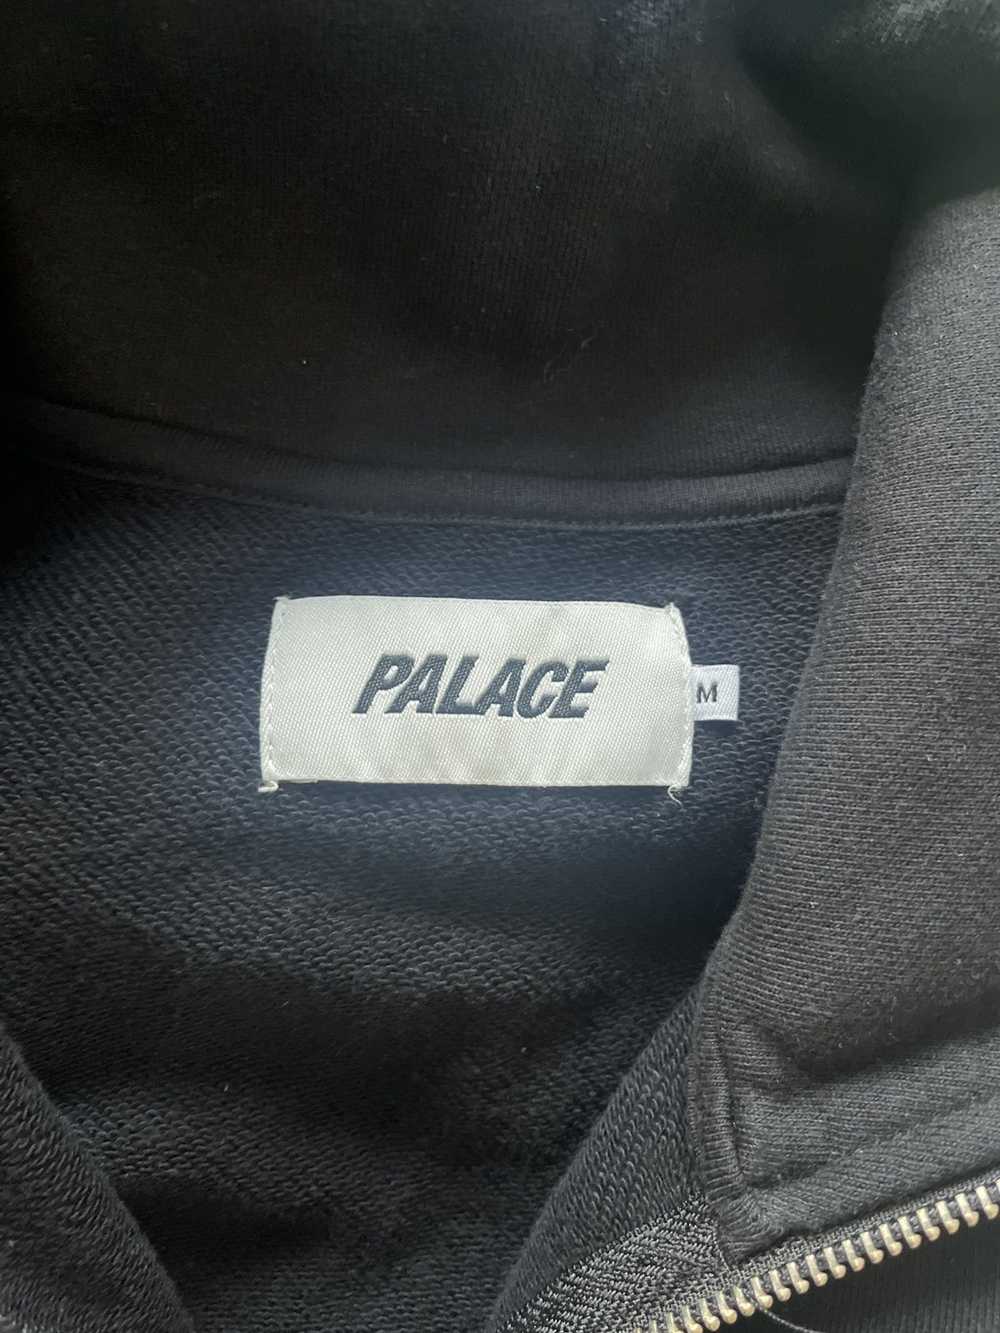 Palace S-Drop Top Black/Teal (Summer 2018) - image 5